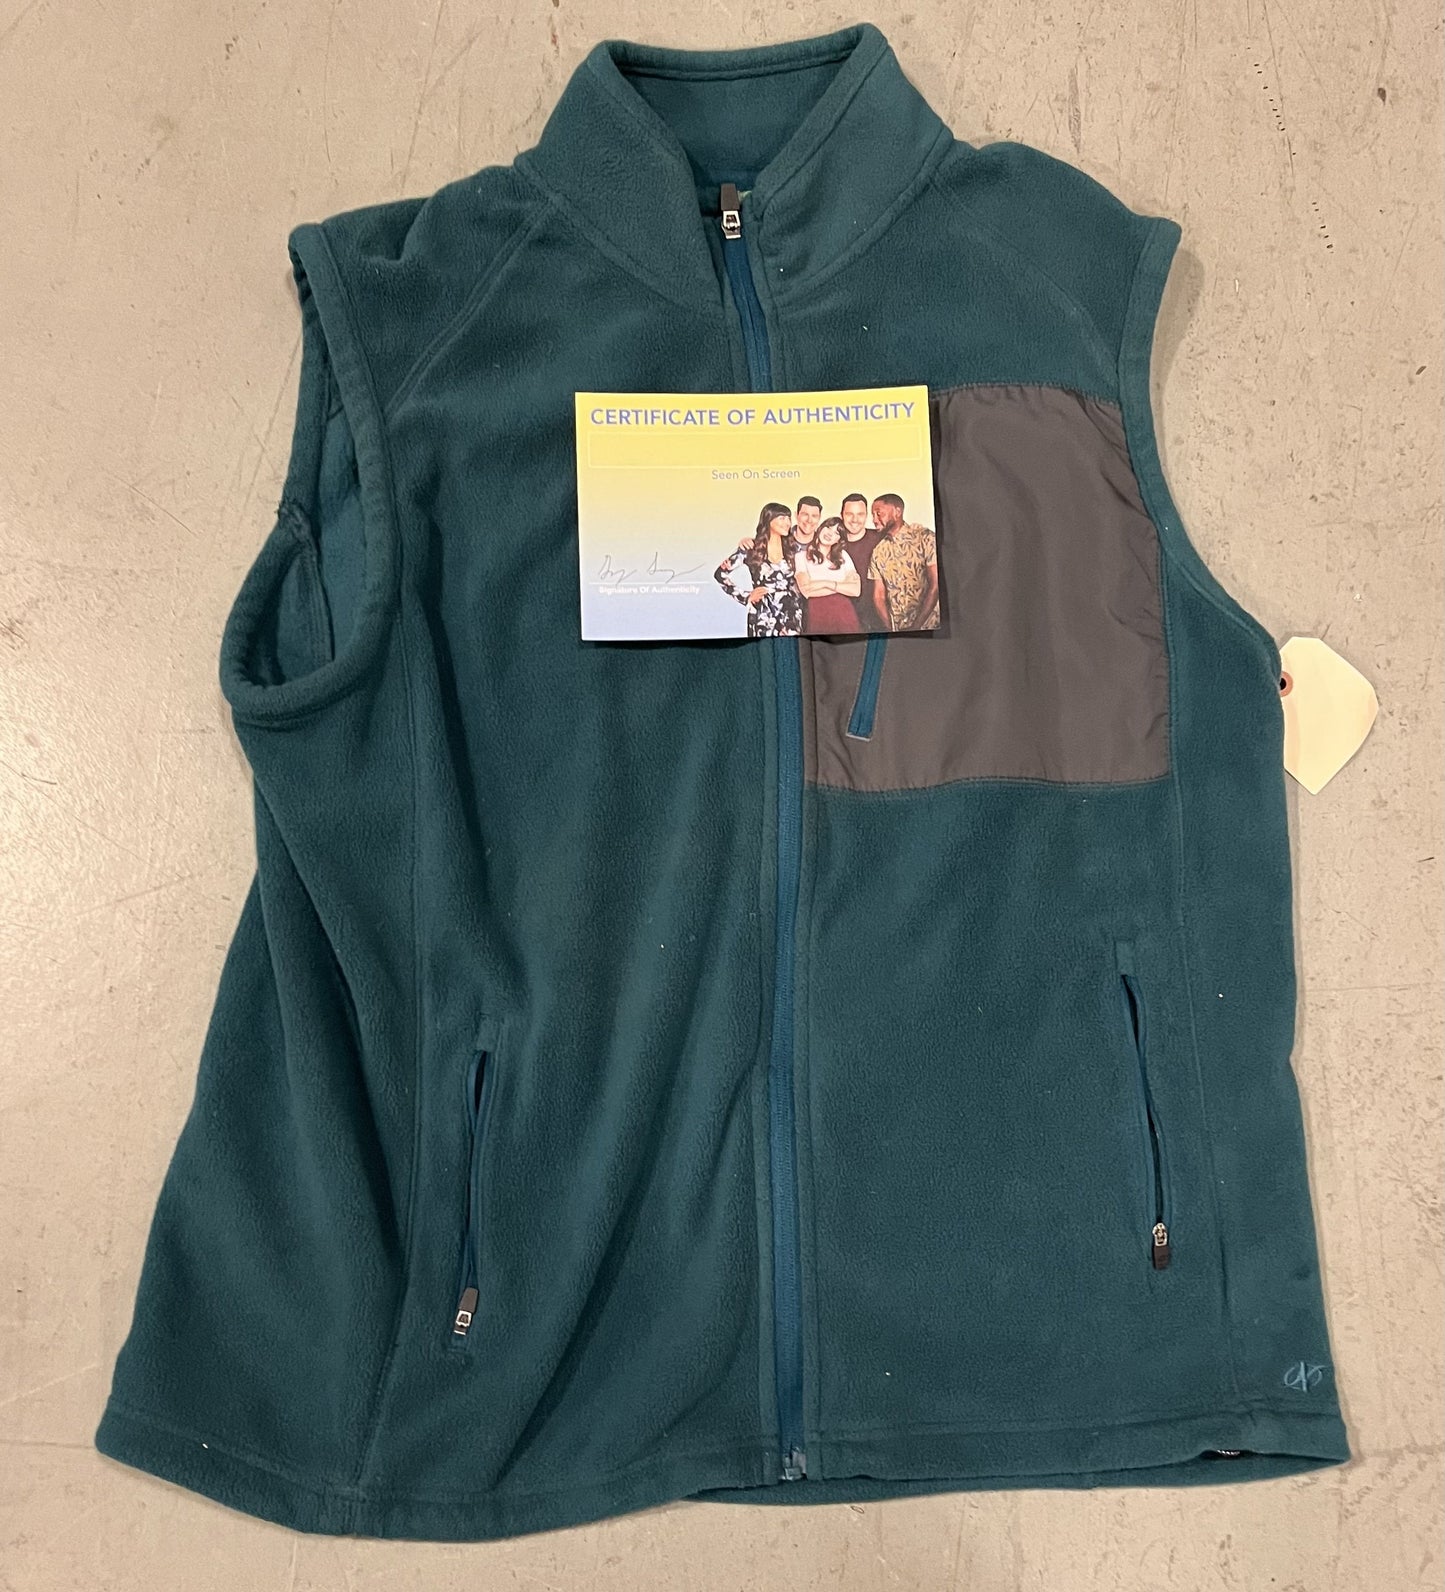 NEW GIRL: Schmidt's Green Sleeveless Fleece Zip Jacket (L)